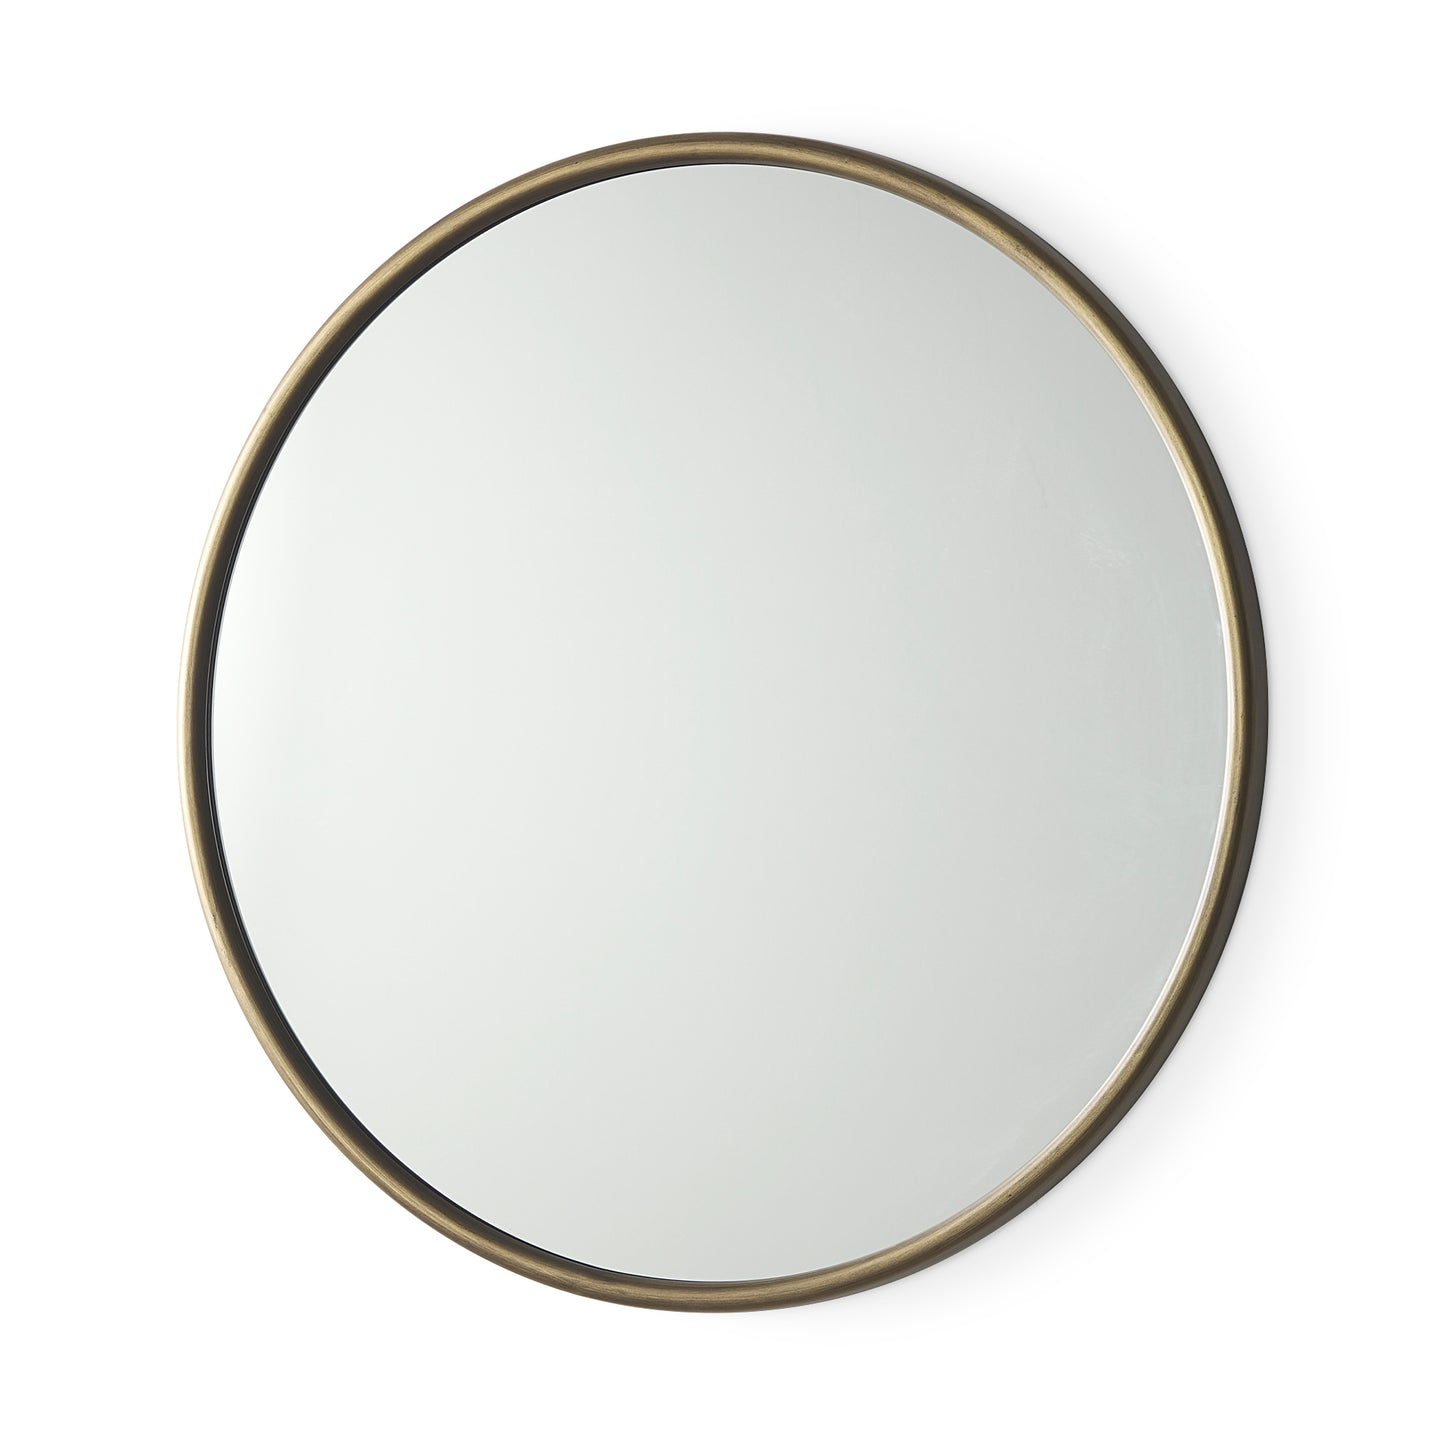 Piper Mirror, Small Gold